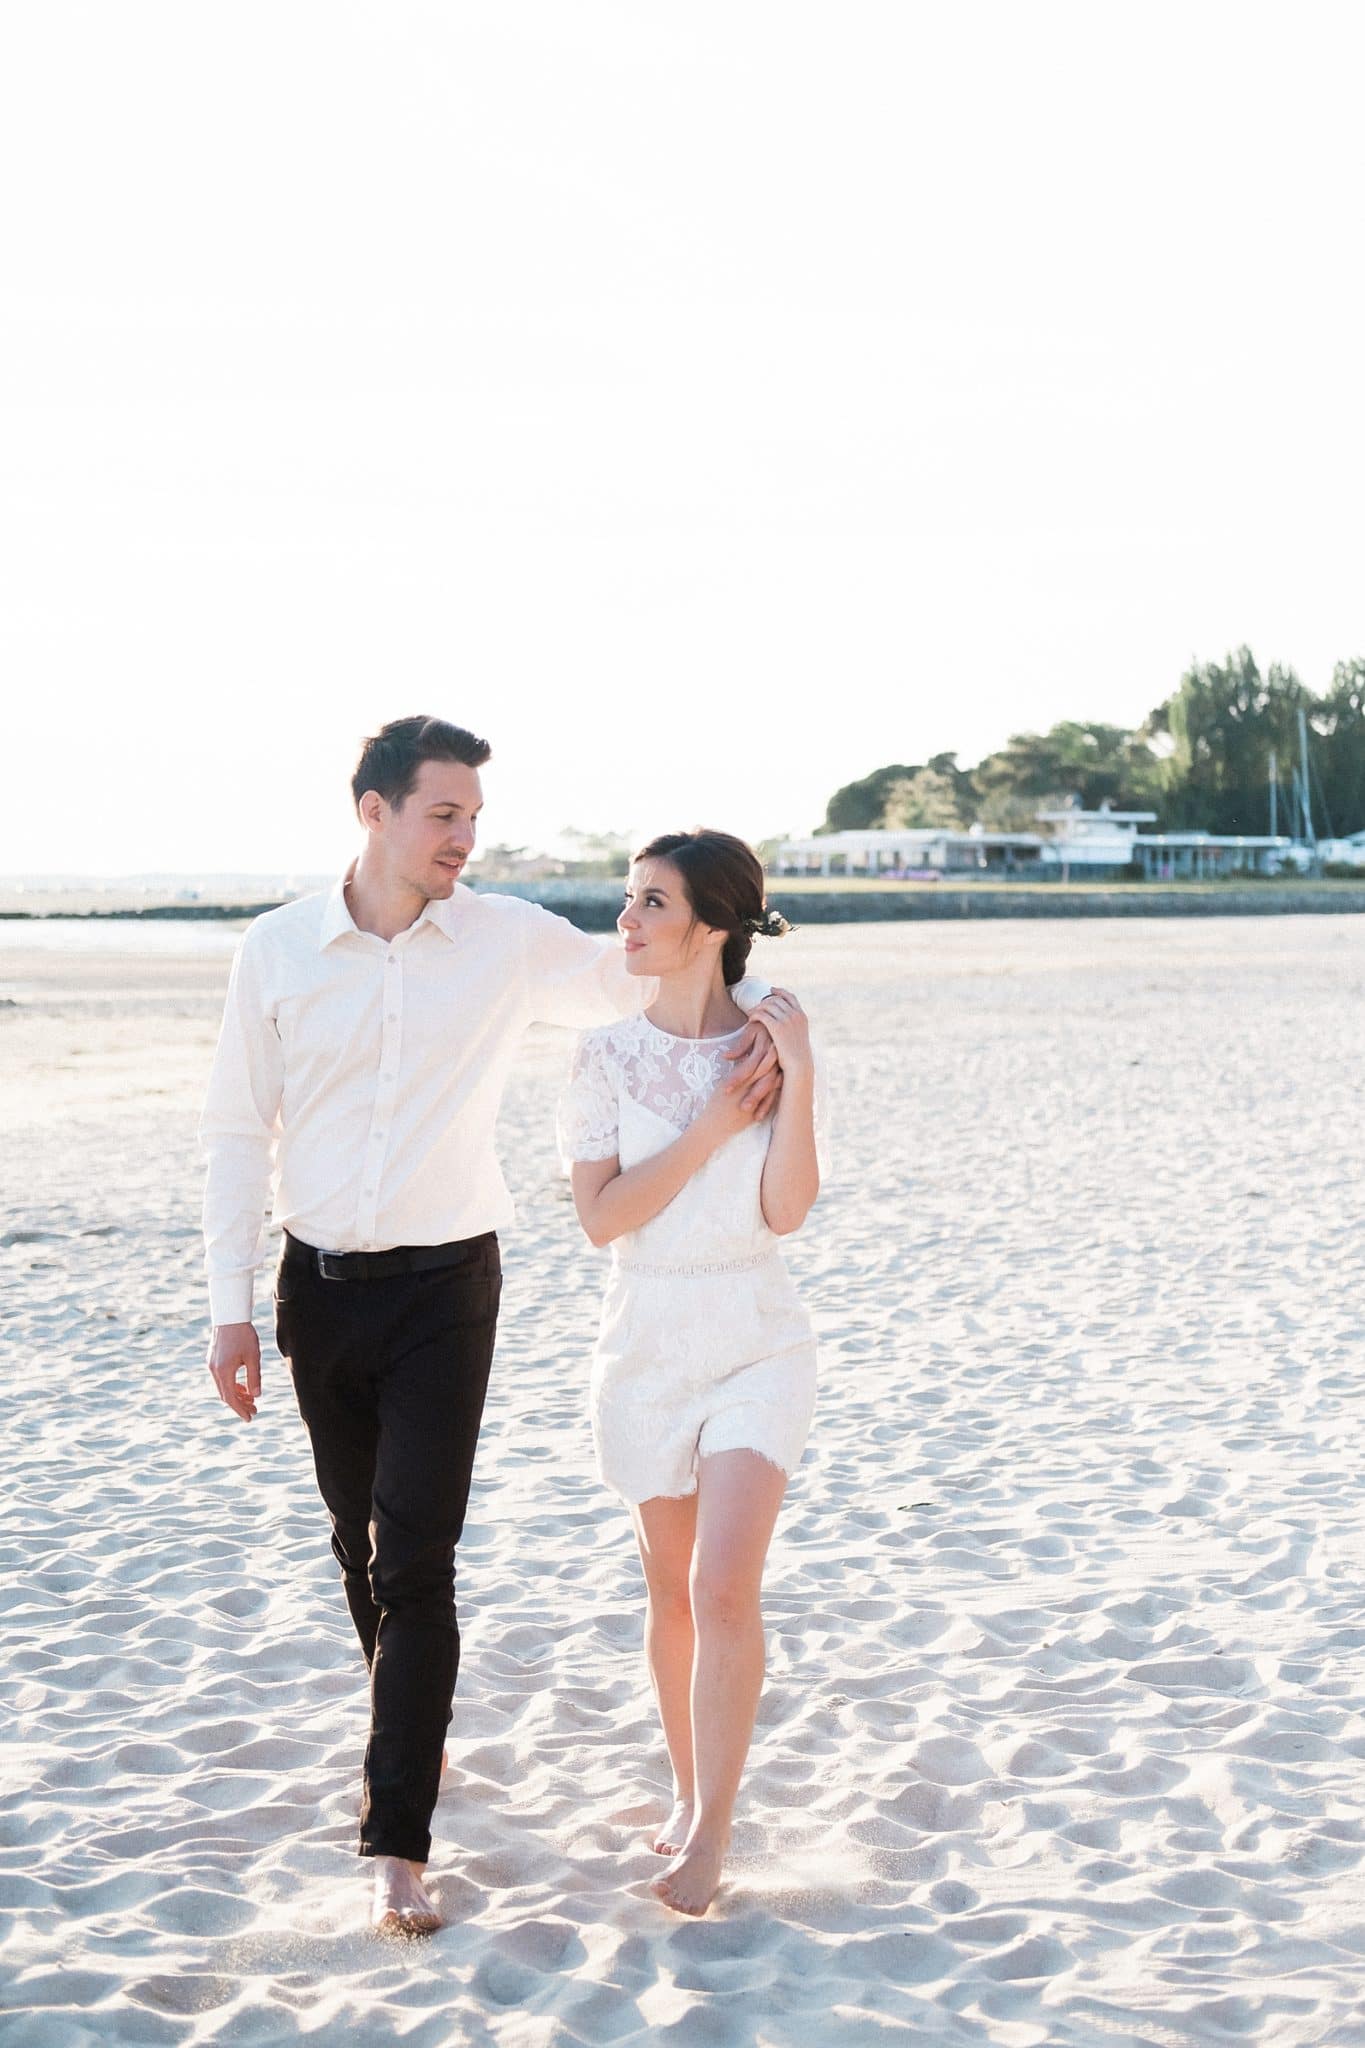 seance couple ou les futurs mariés sont en train de marcher dans le sable au bord de la plage a andernos les bains sur le bassin d'arcachon